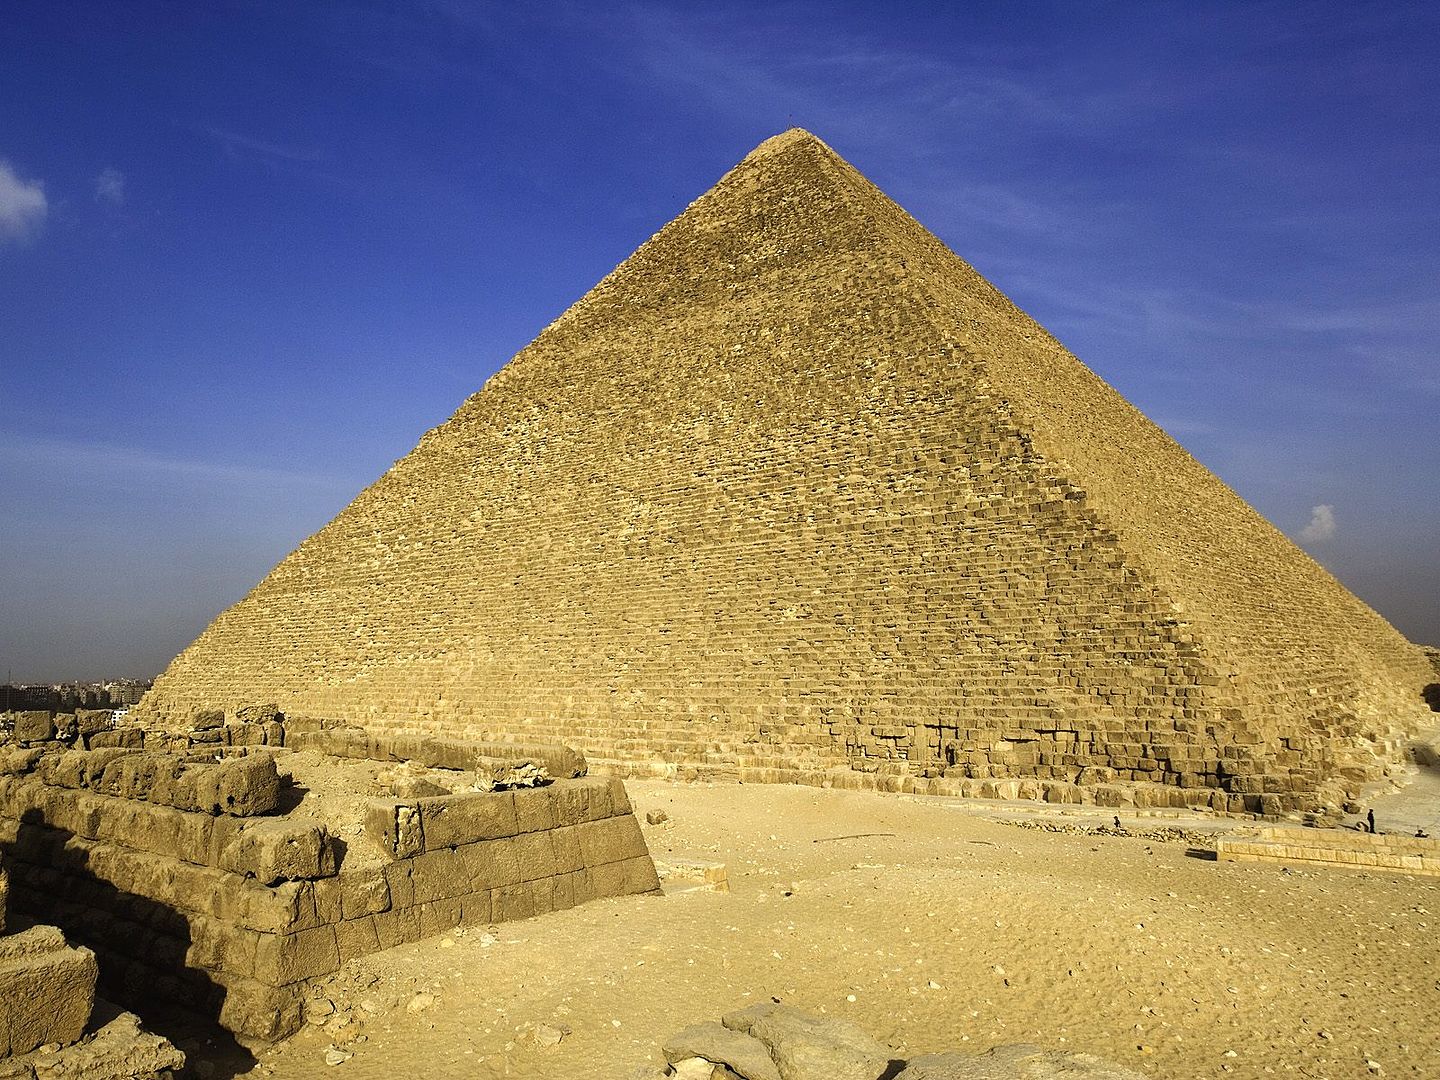 صور وخلفيات لأهرامات الجيزة وأبو الهول Pyramids of Giza and the Sphinx 2810